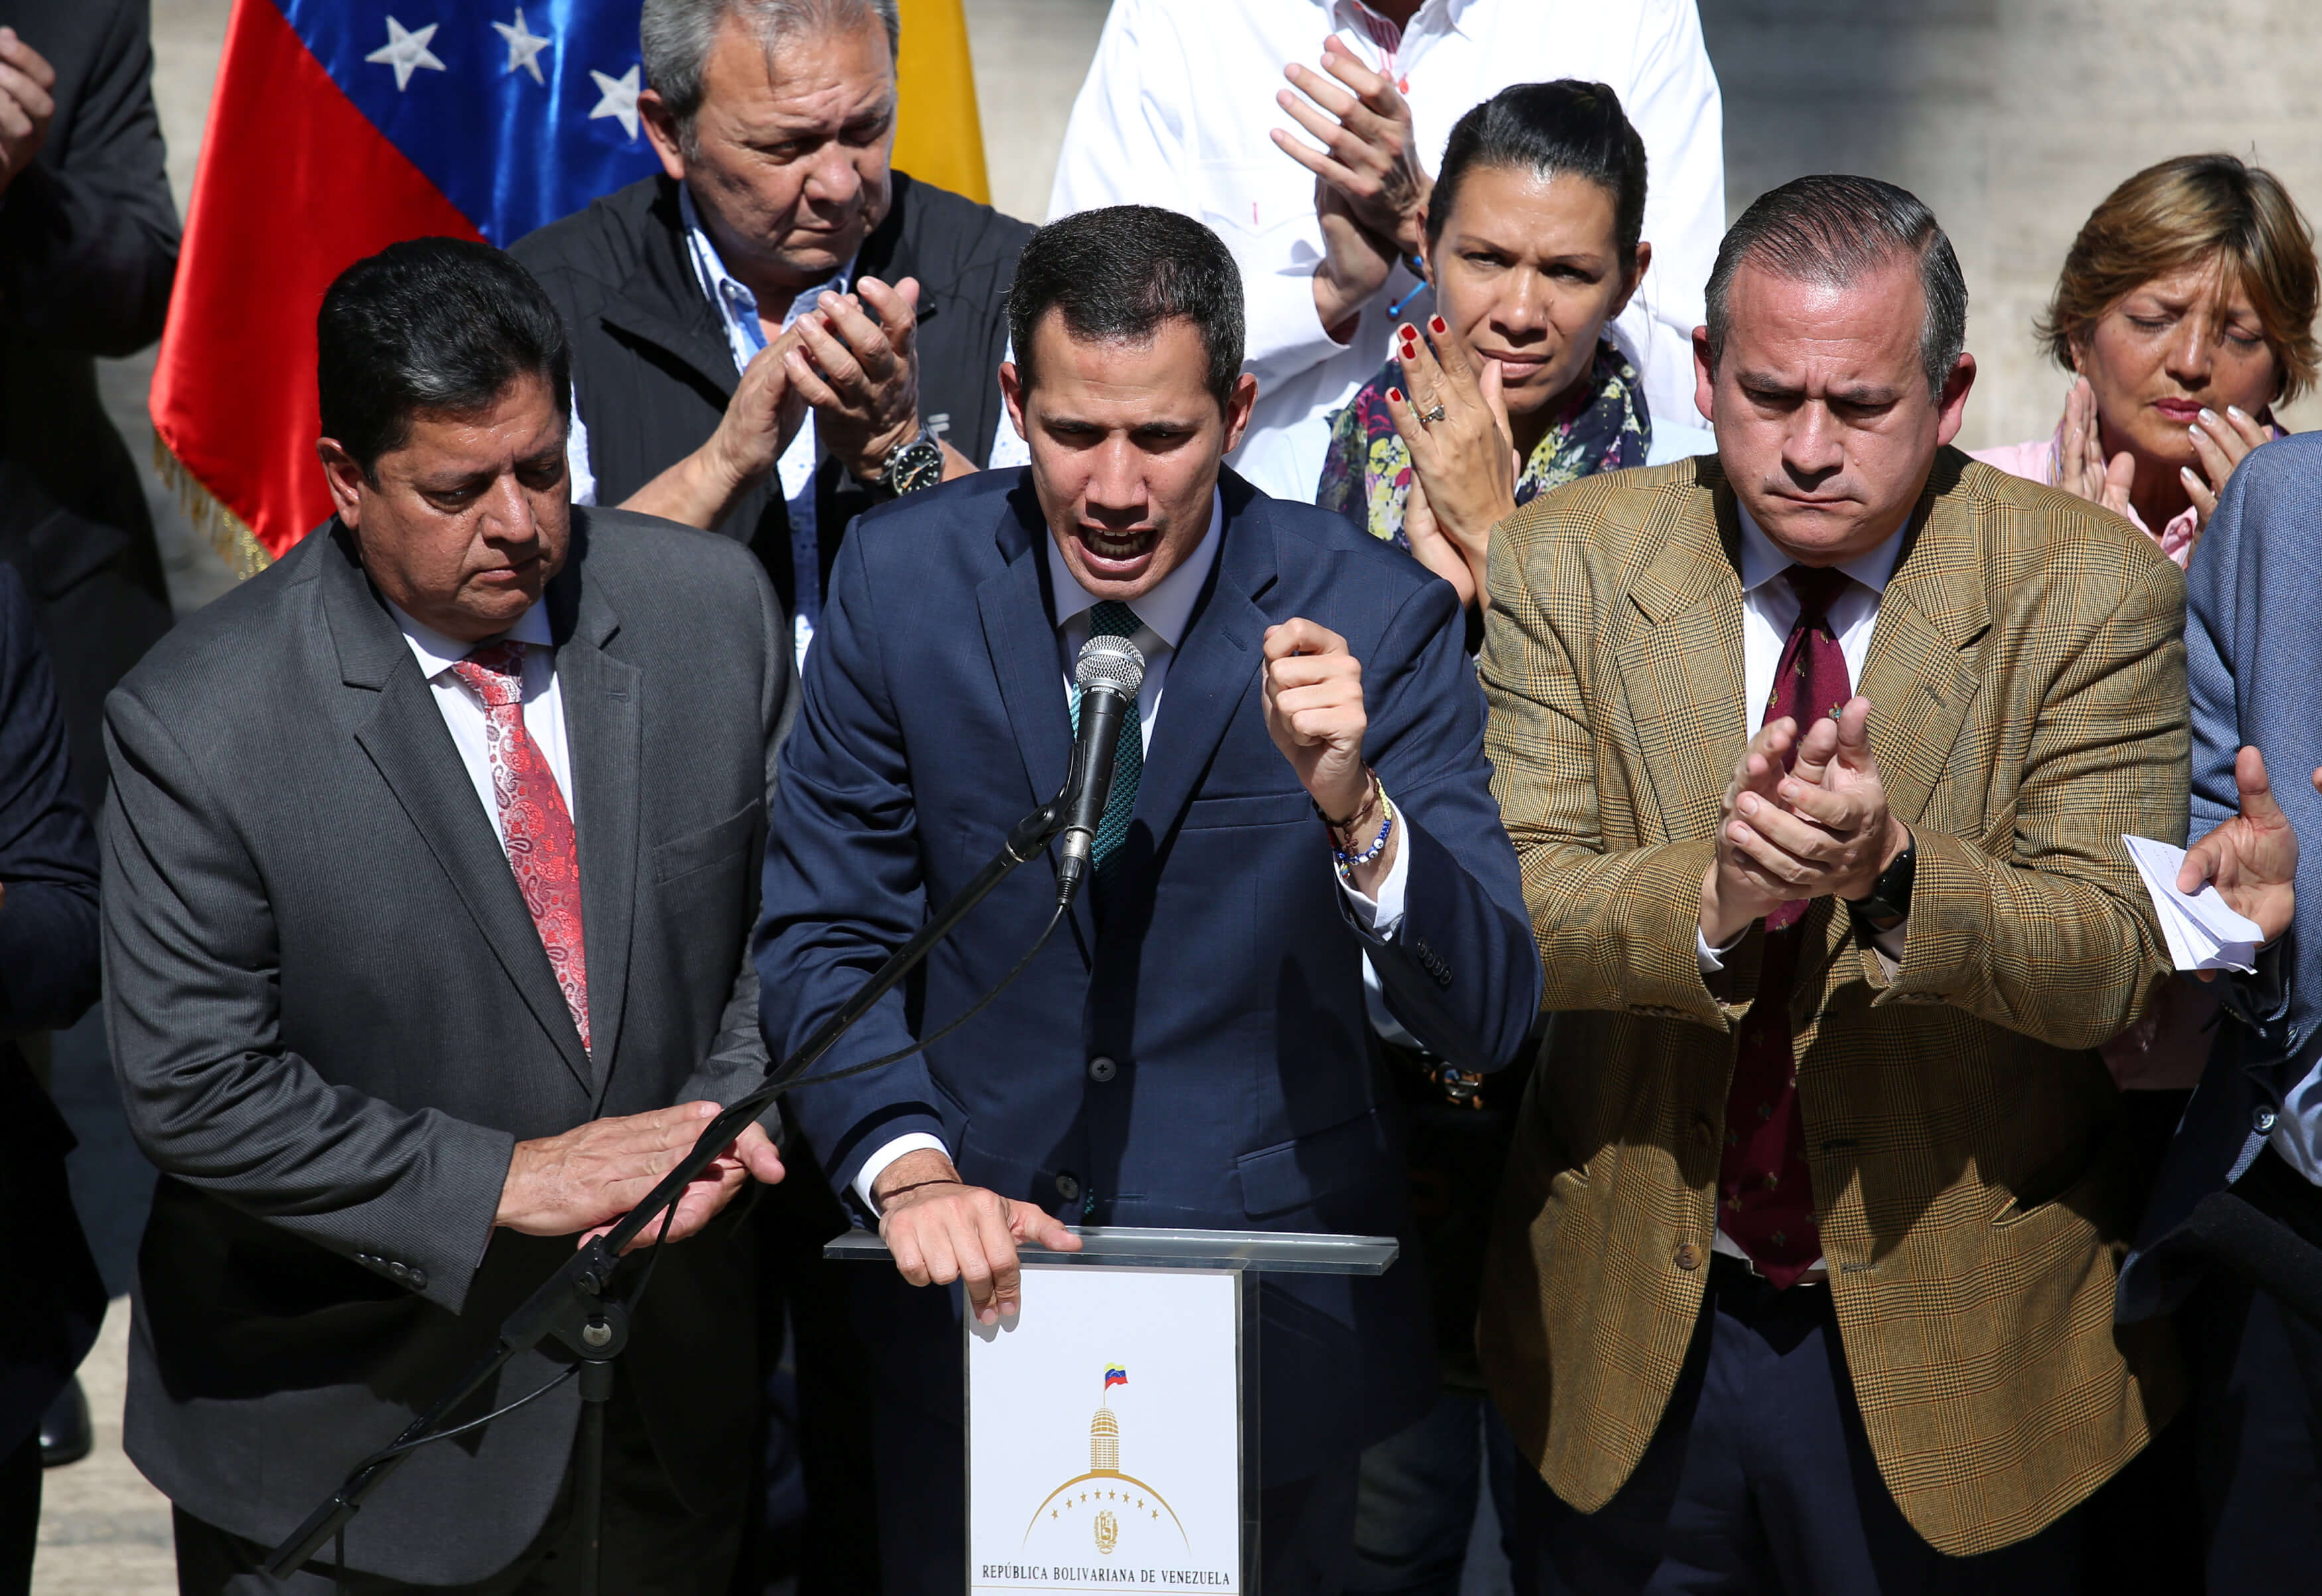 Foto: El líder de la oposición venezolana, Juan Guaidó, habla durante una conferencia de prensa en la Asamblea Nacional en Caracas el 4 de febrero del 2019